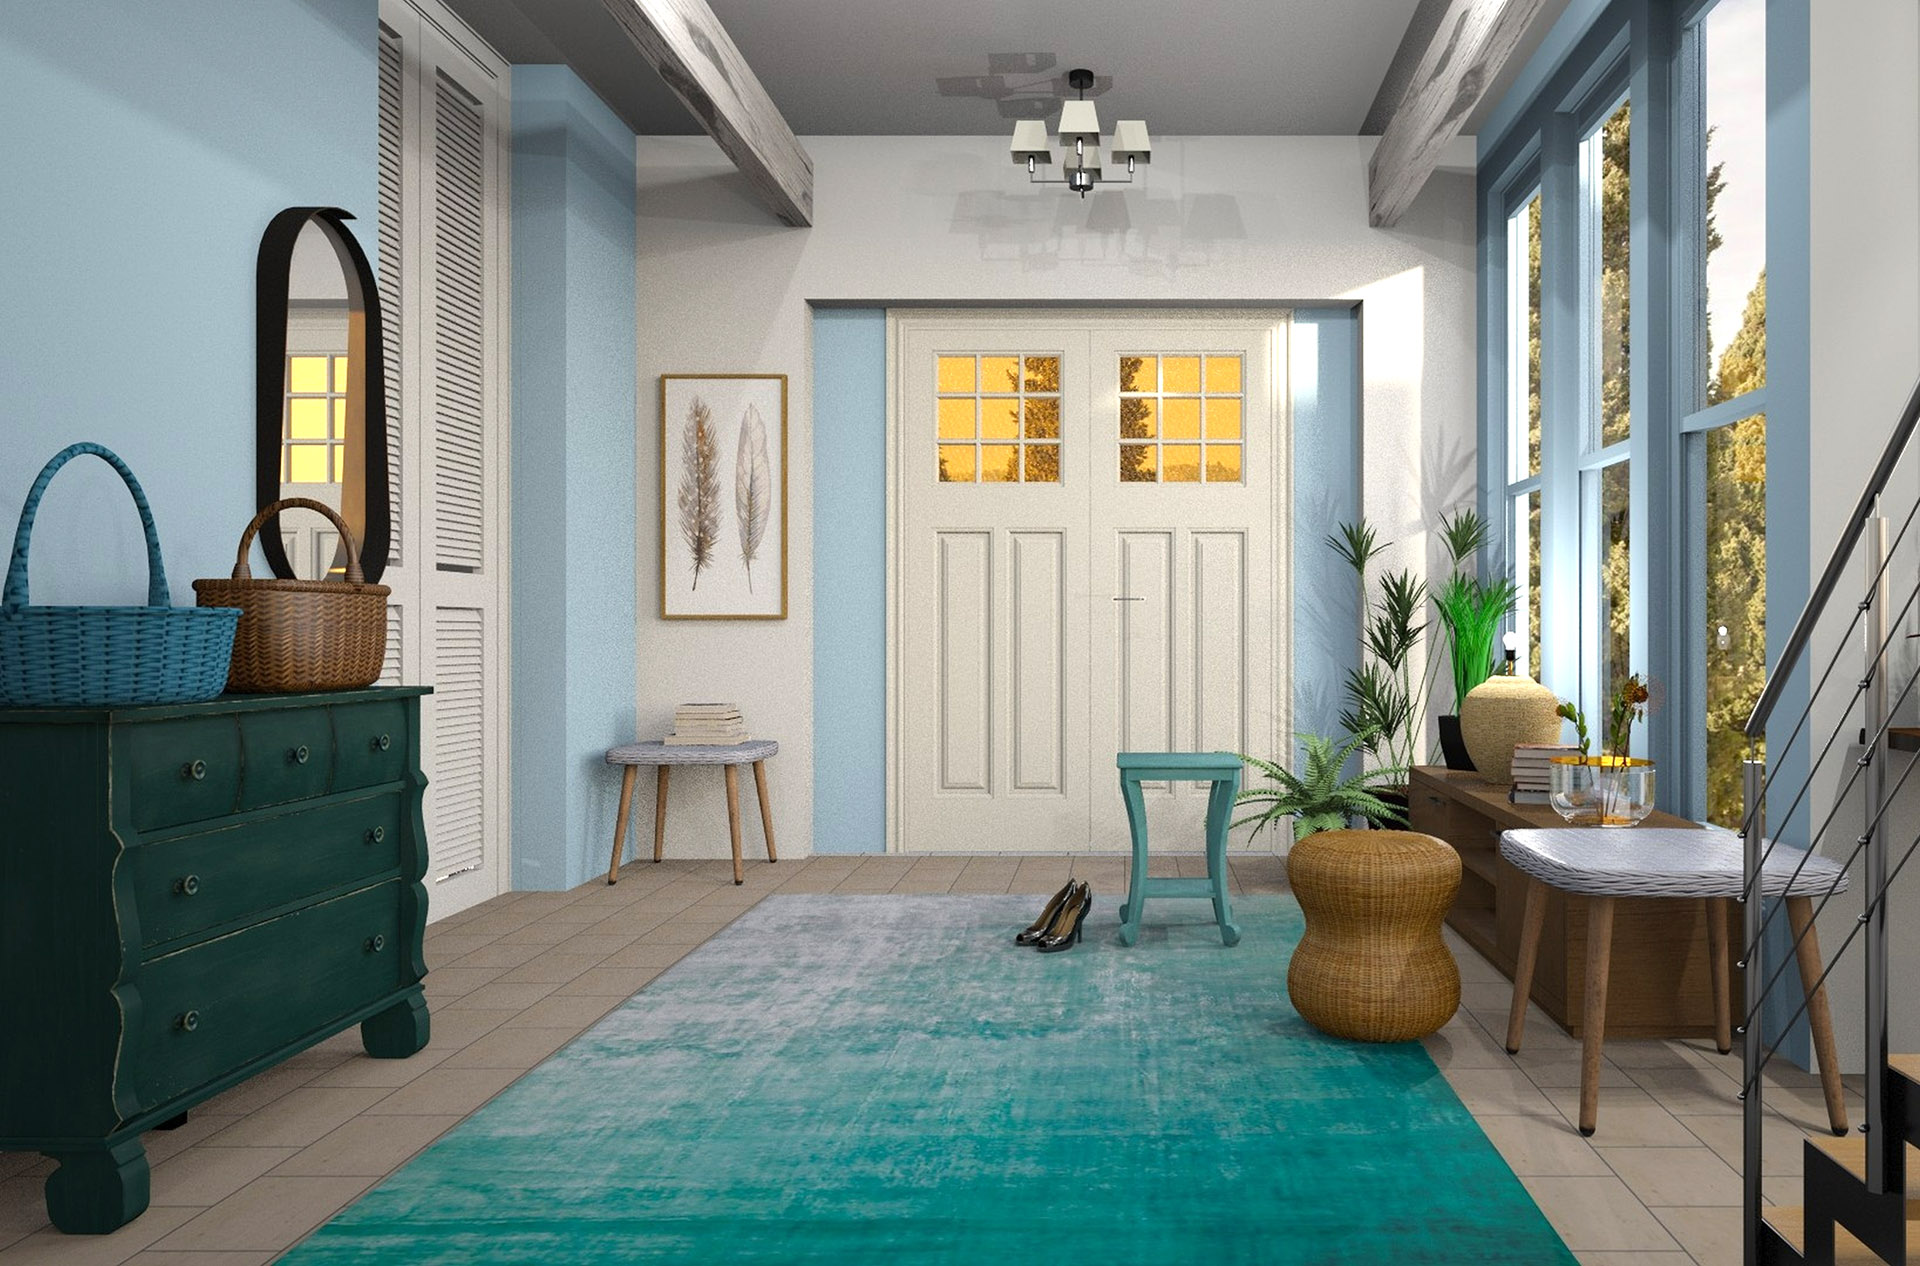 personalizzare appartamento in affitto - tappeti